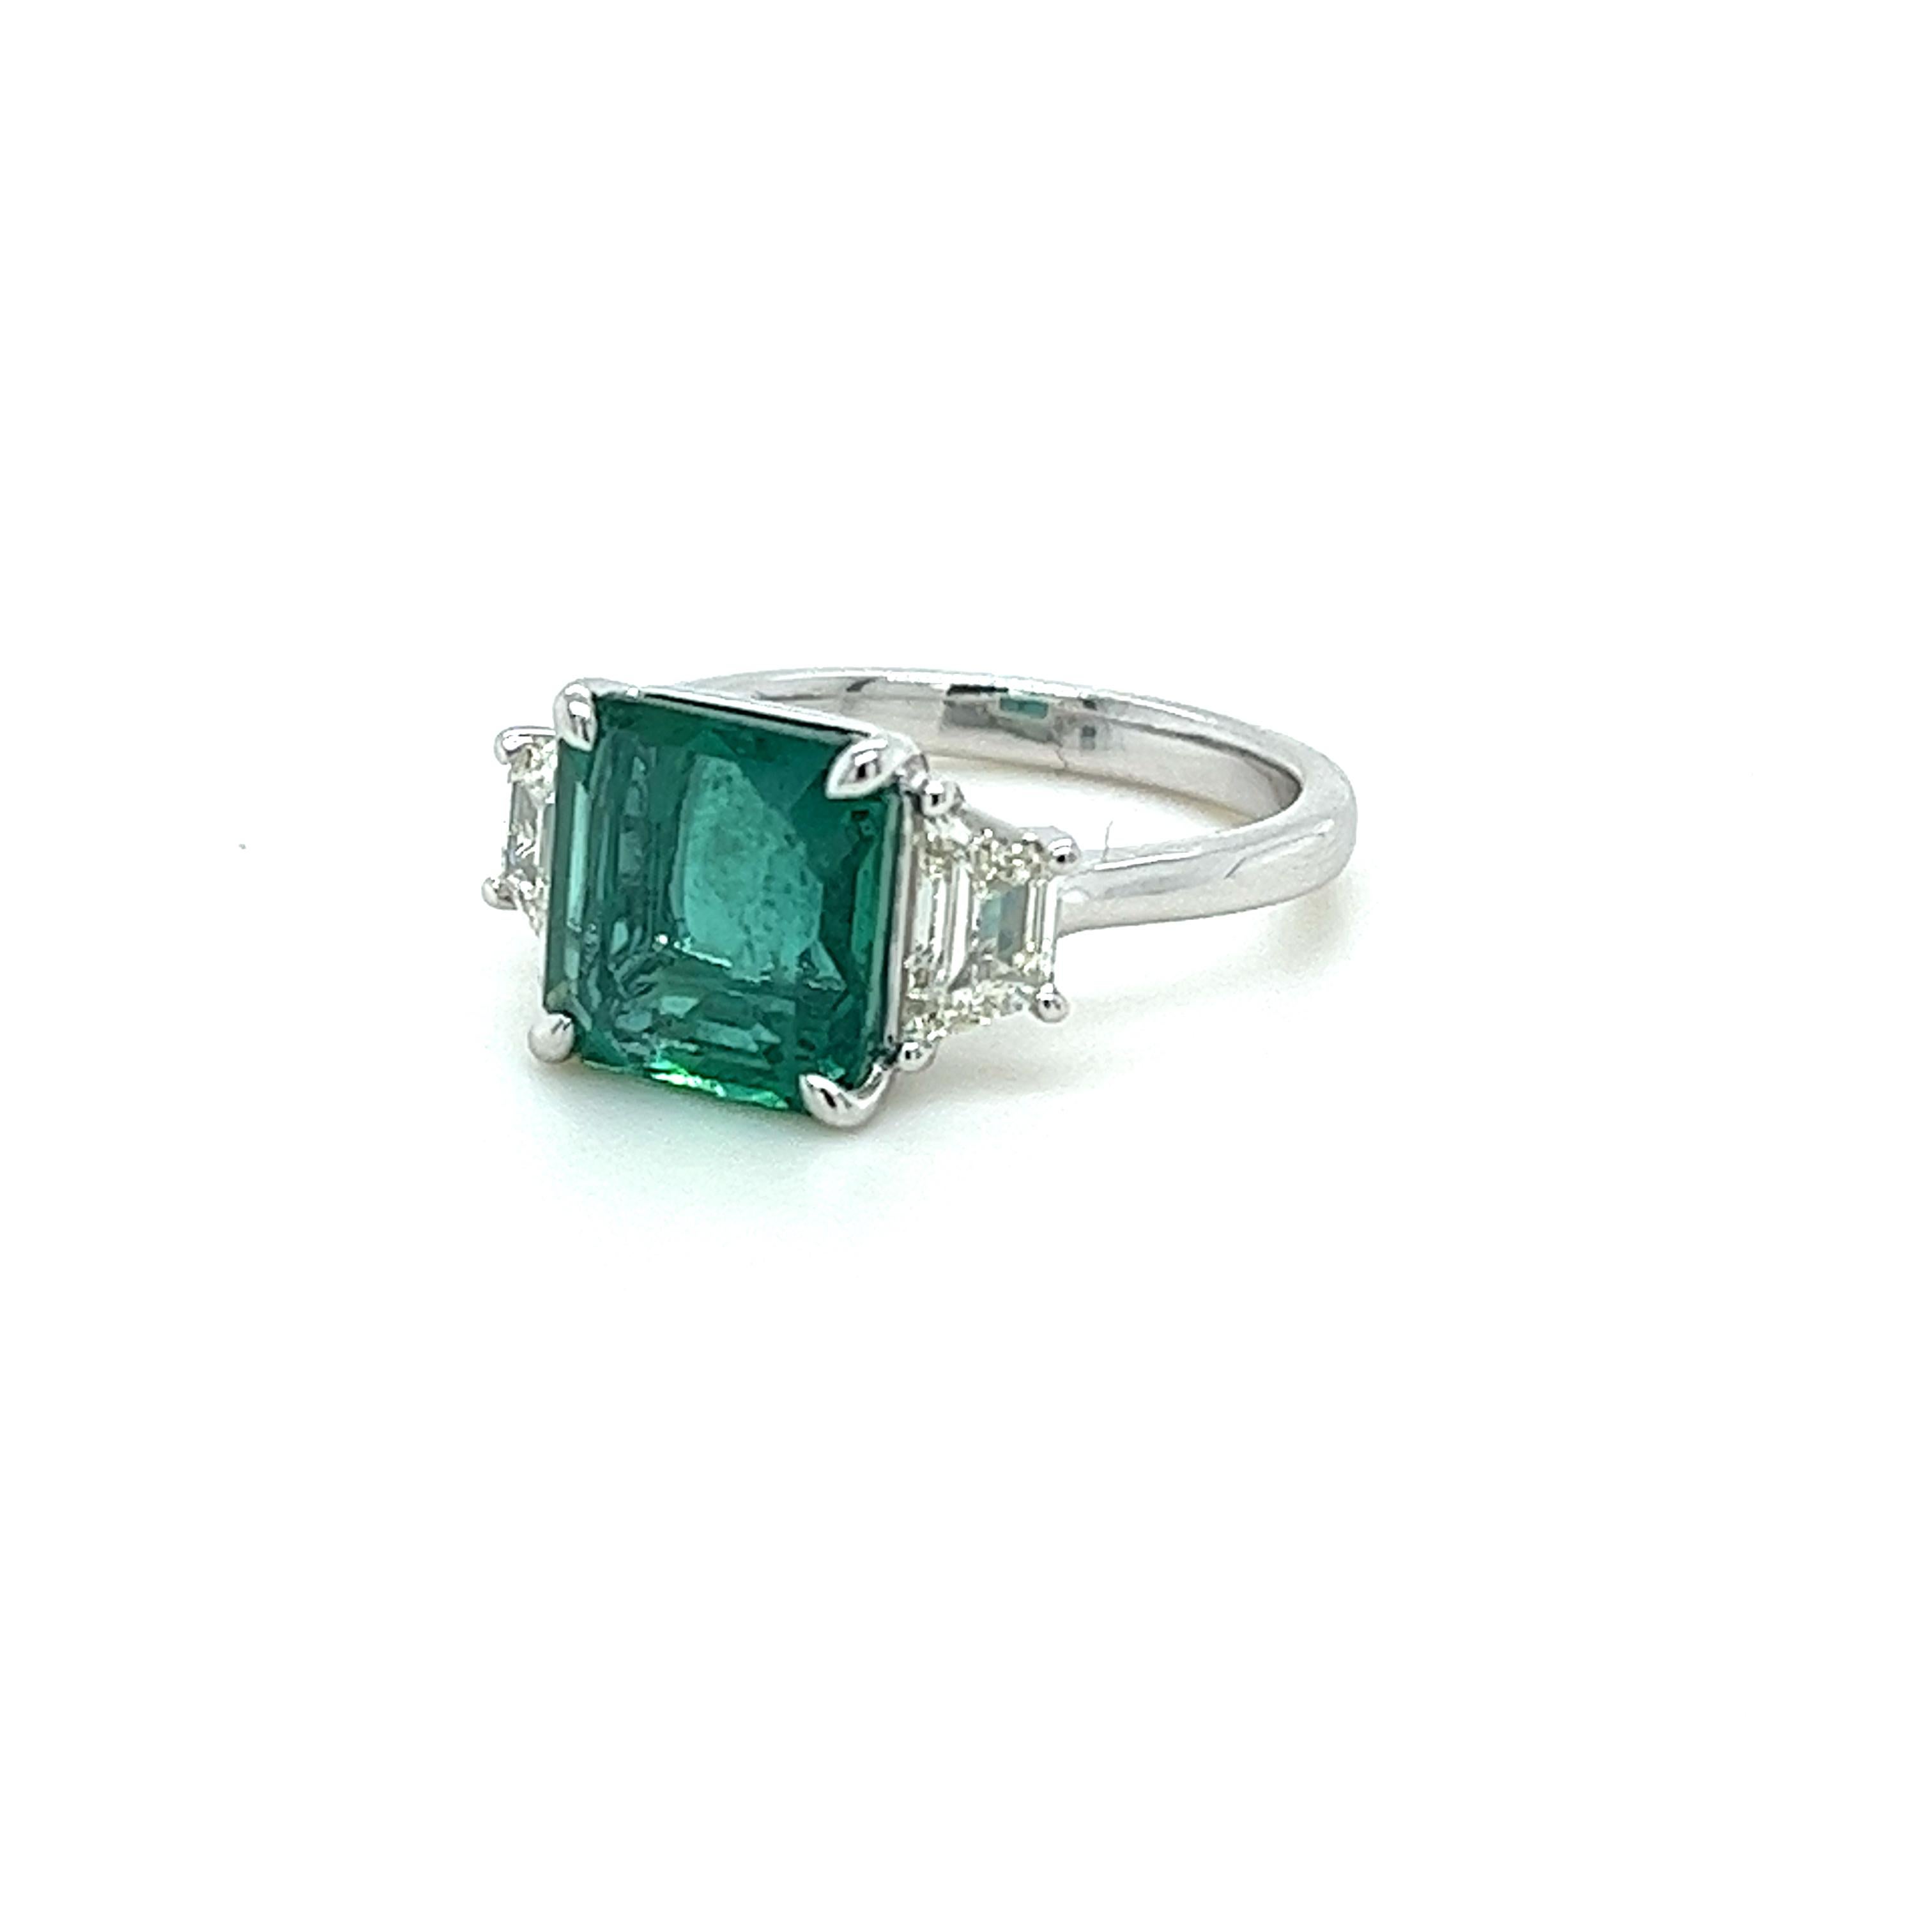 GIA Certified Squarish Emerald Cut Emerald weighing 3.66 carats
Measuring (9.54x9.07x5.21) mm
Trapezoid Diamonds weighing .79 carats
I-SI1 quality diamonds
Set in platinum ring
7.00 grams